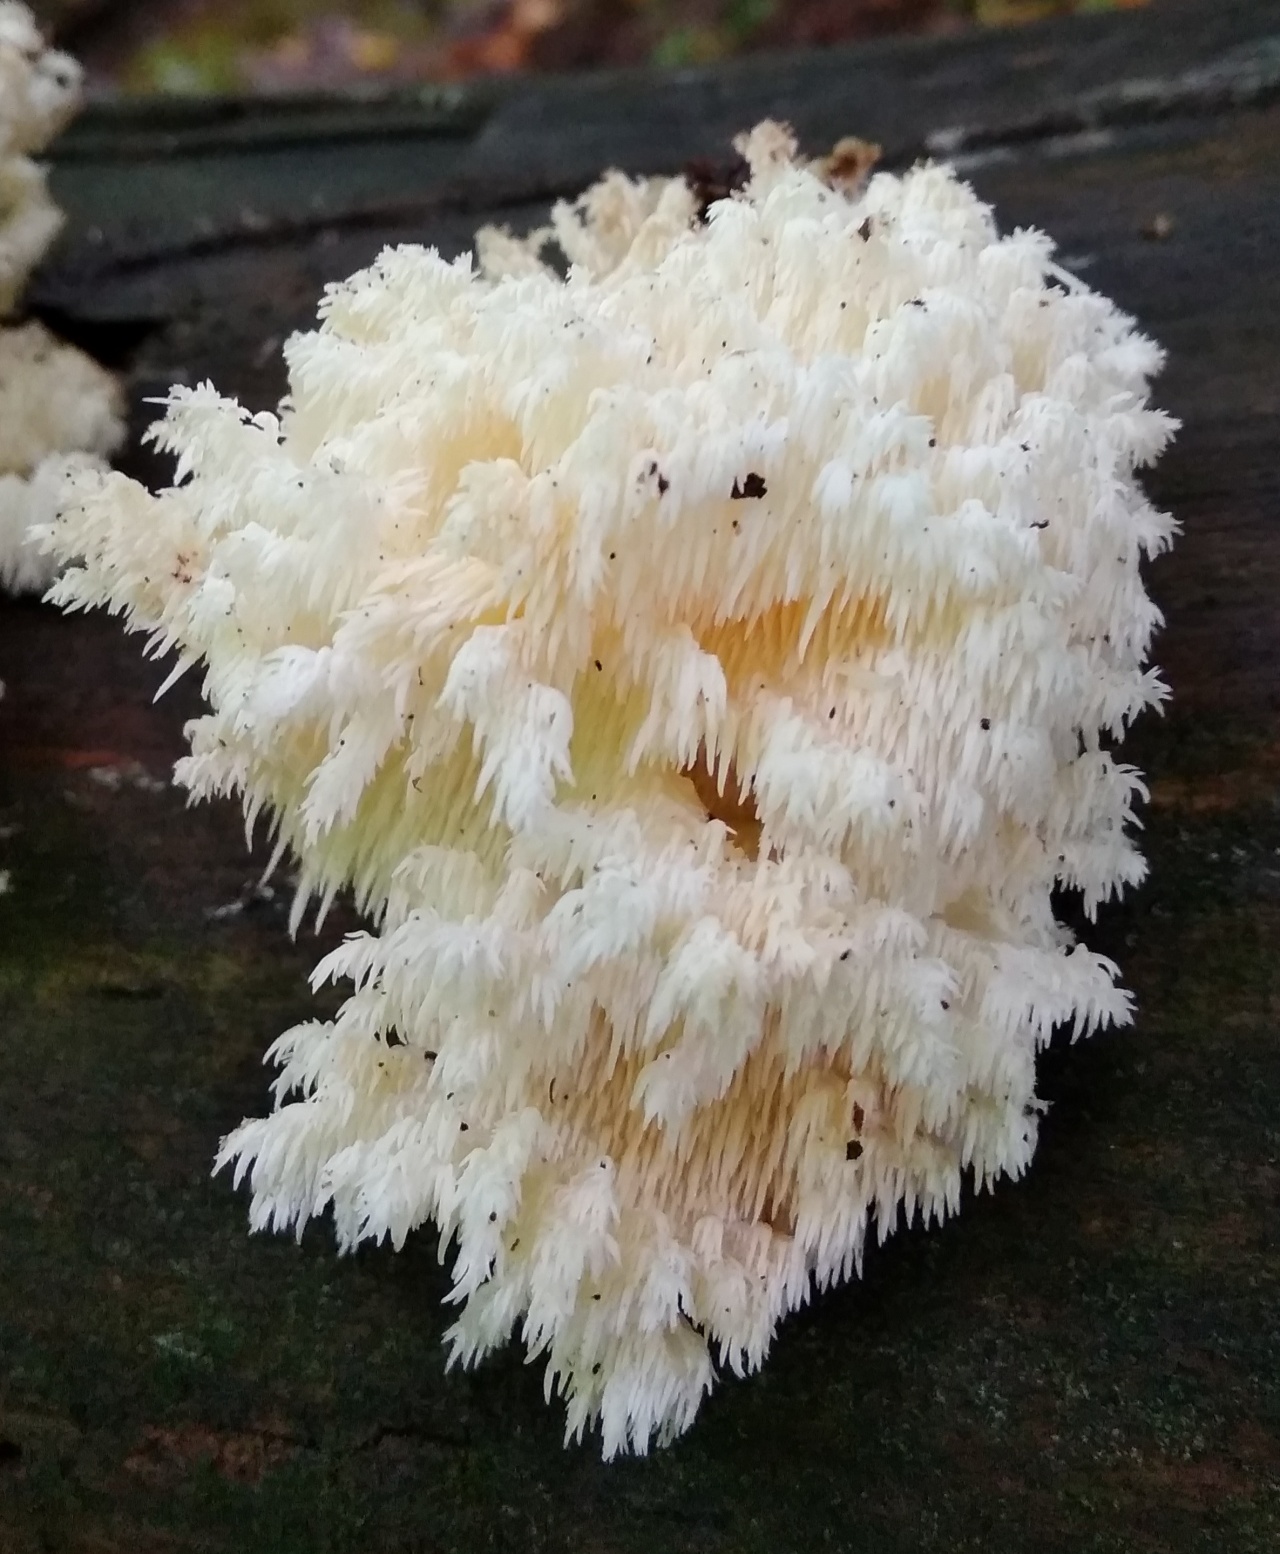 Ежовик коралловидный - Hericium coralloides